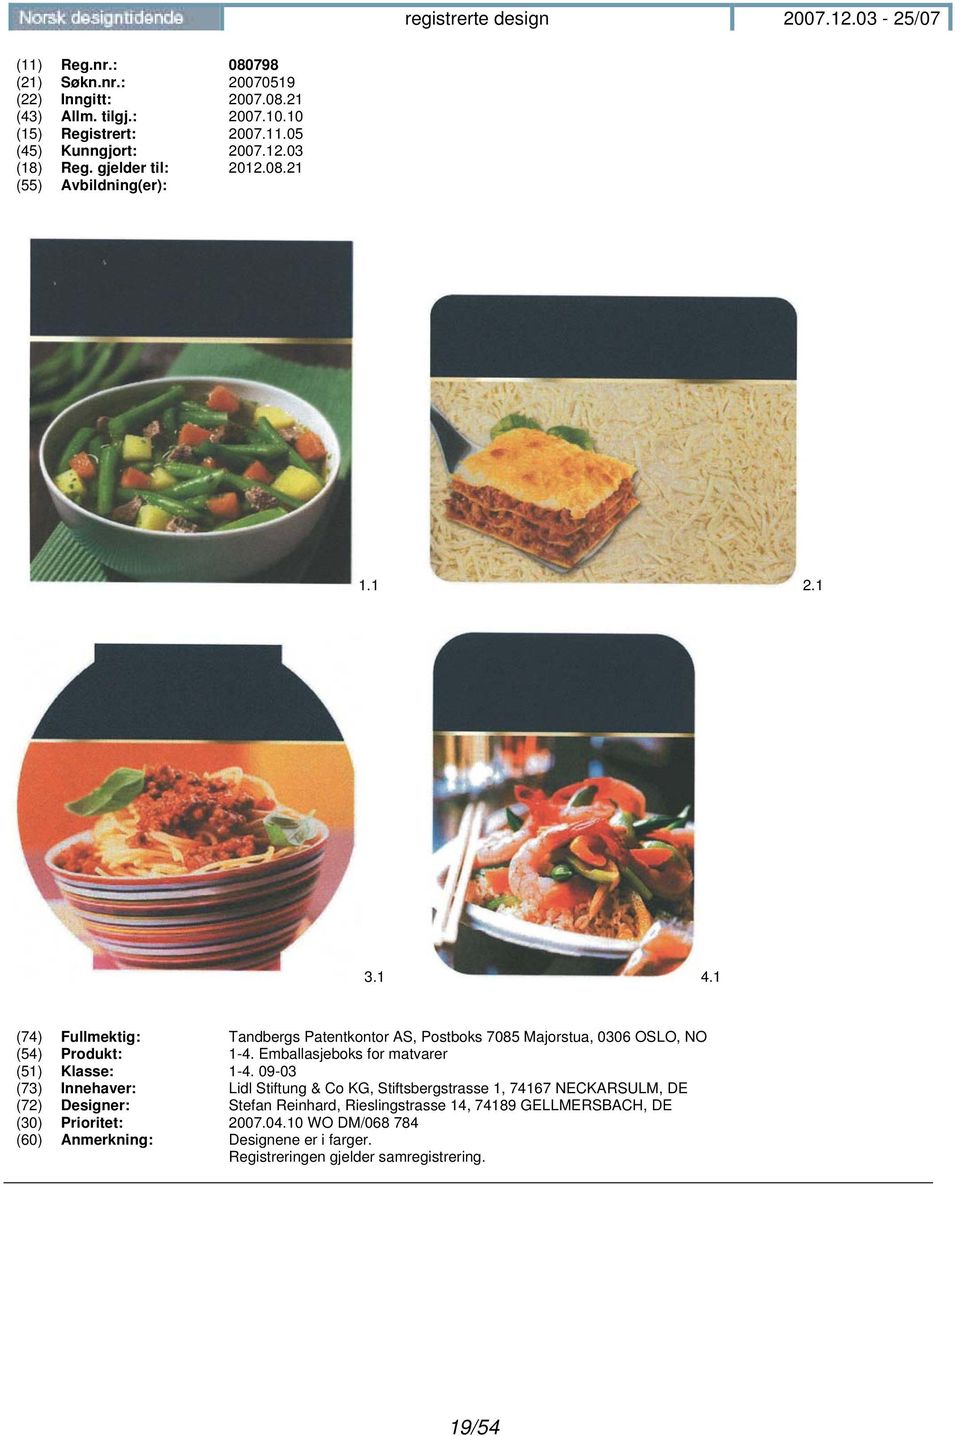 Emballasjeboks for matvarer (51) Klasse: 1-4.